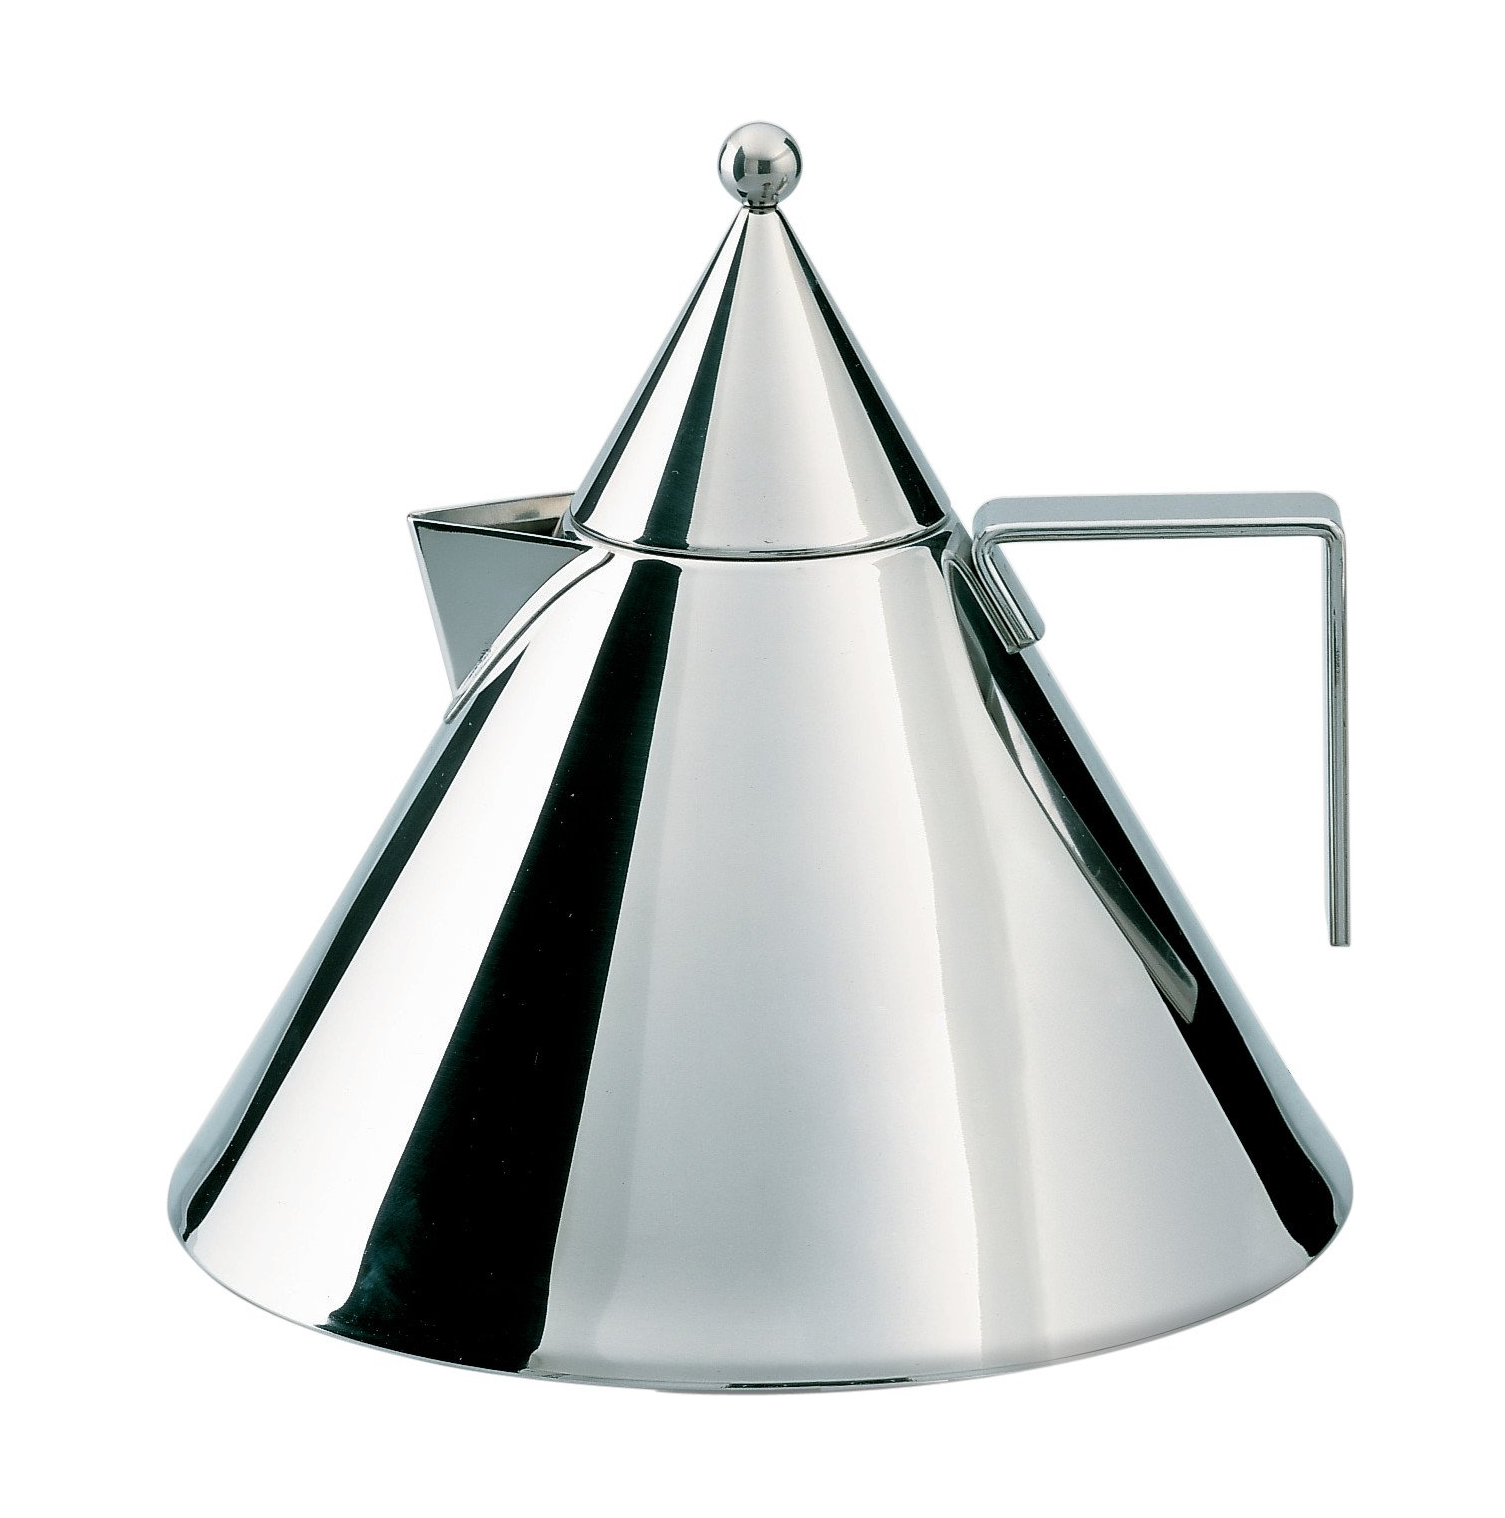 La Conica Aldo Rossi's kettle